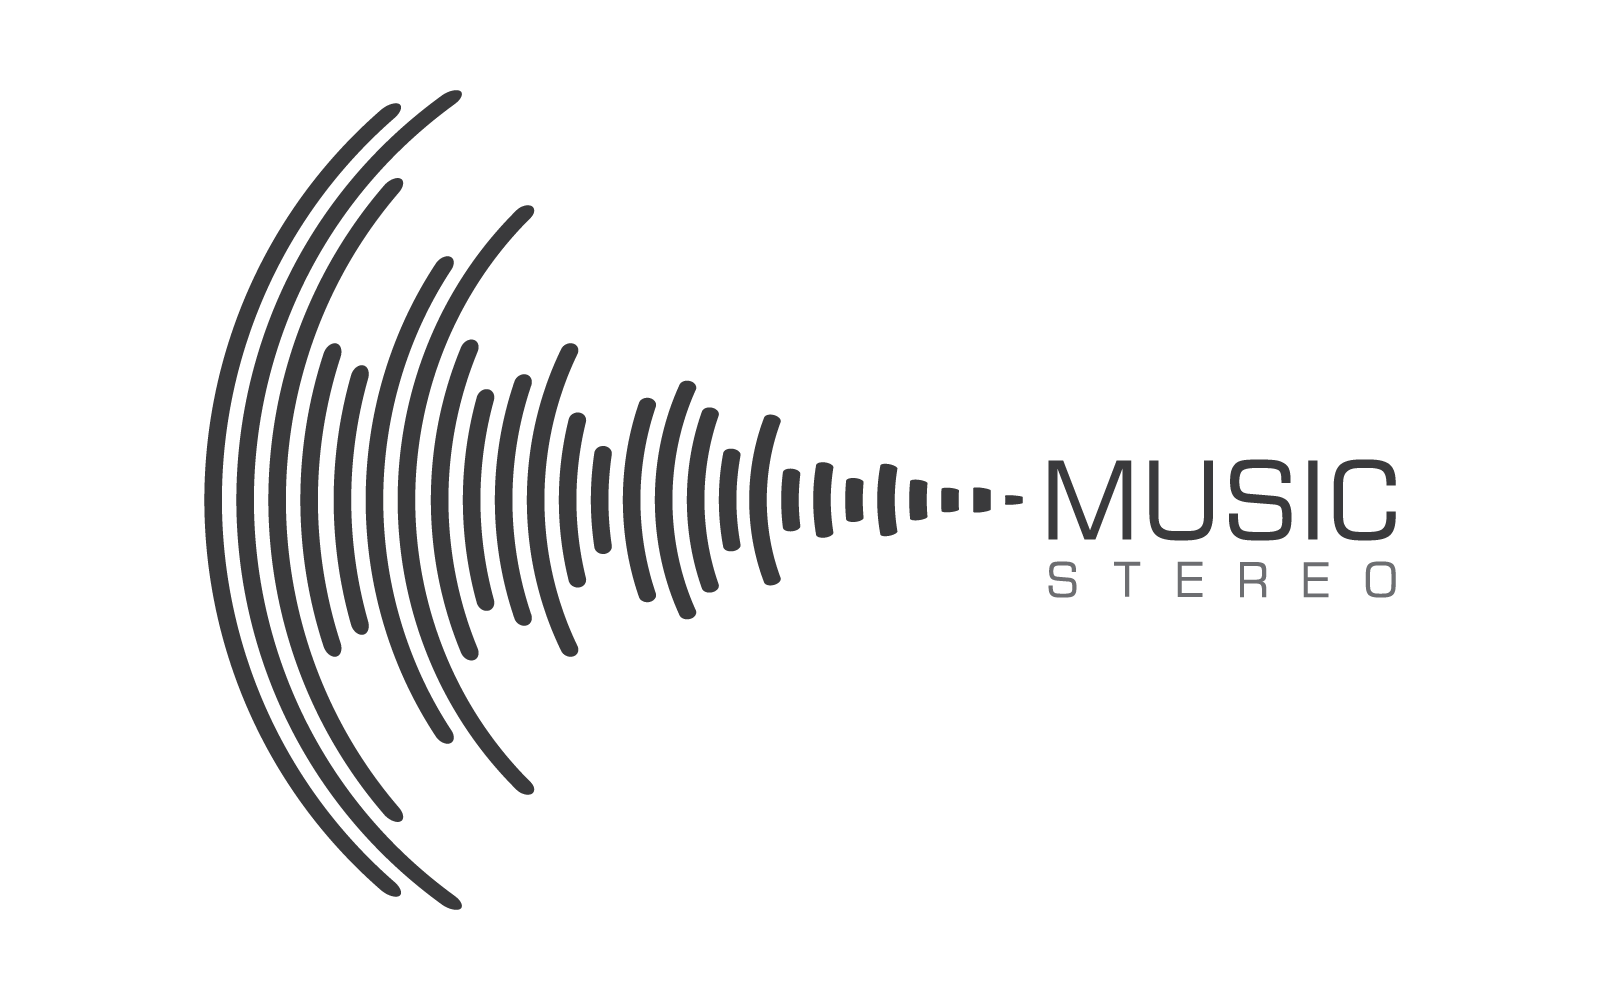 Modello di illustrazione musicale dell'onda sonora